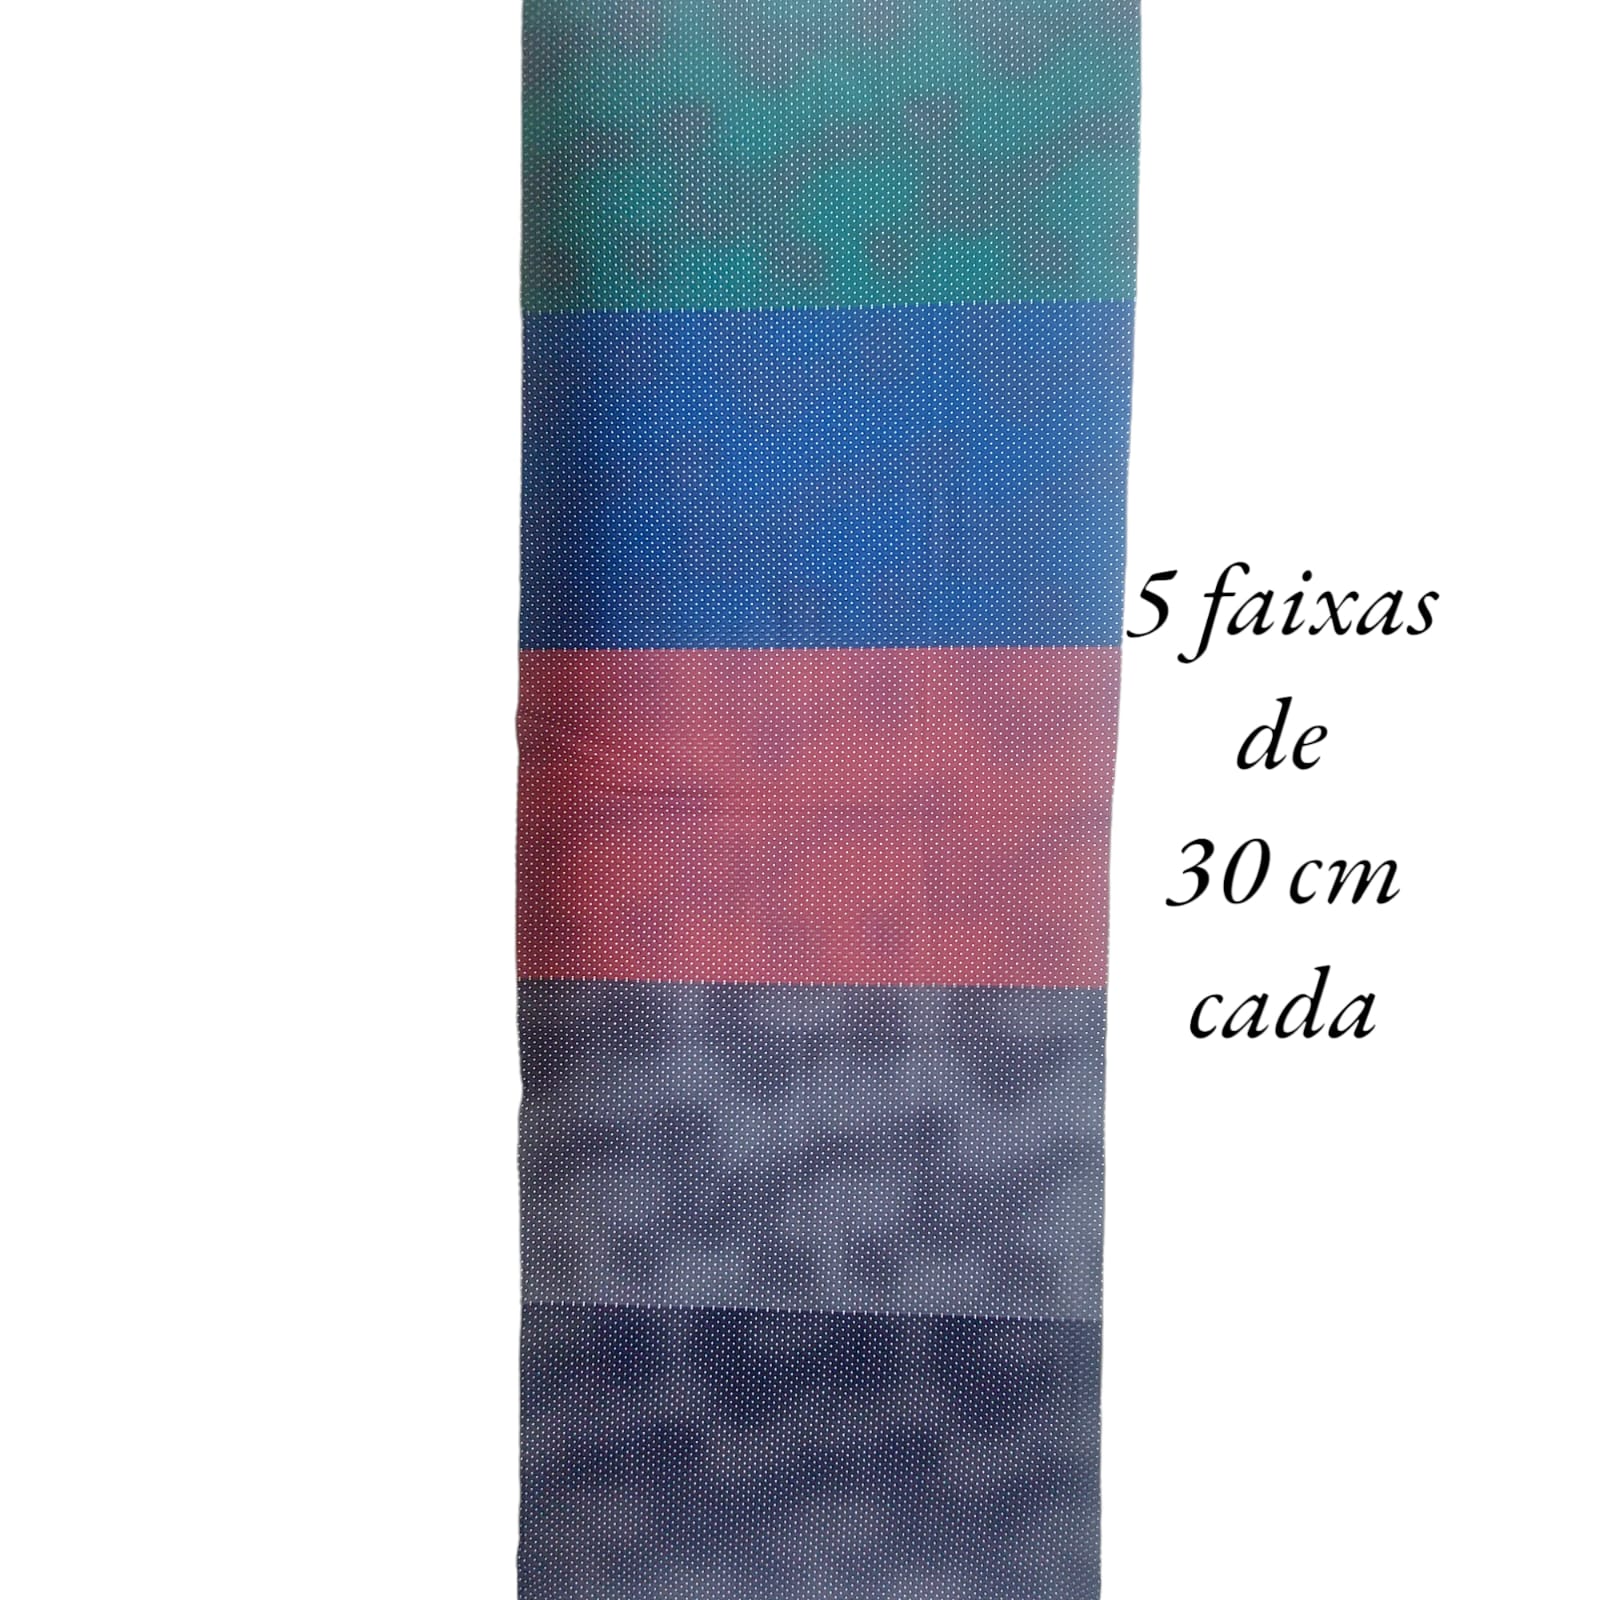 Tecido Tricoline digital - faixas de poa tons variados - Col. Basics for All - Fernando Maluhy  (50x1,50 cm)                         